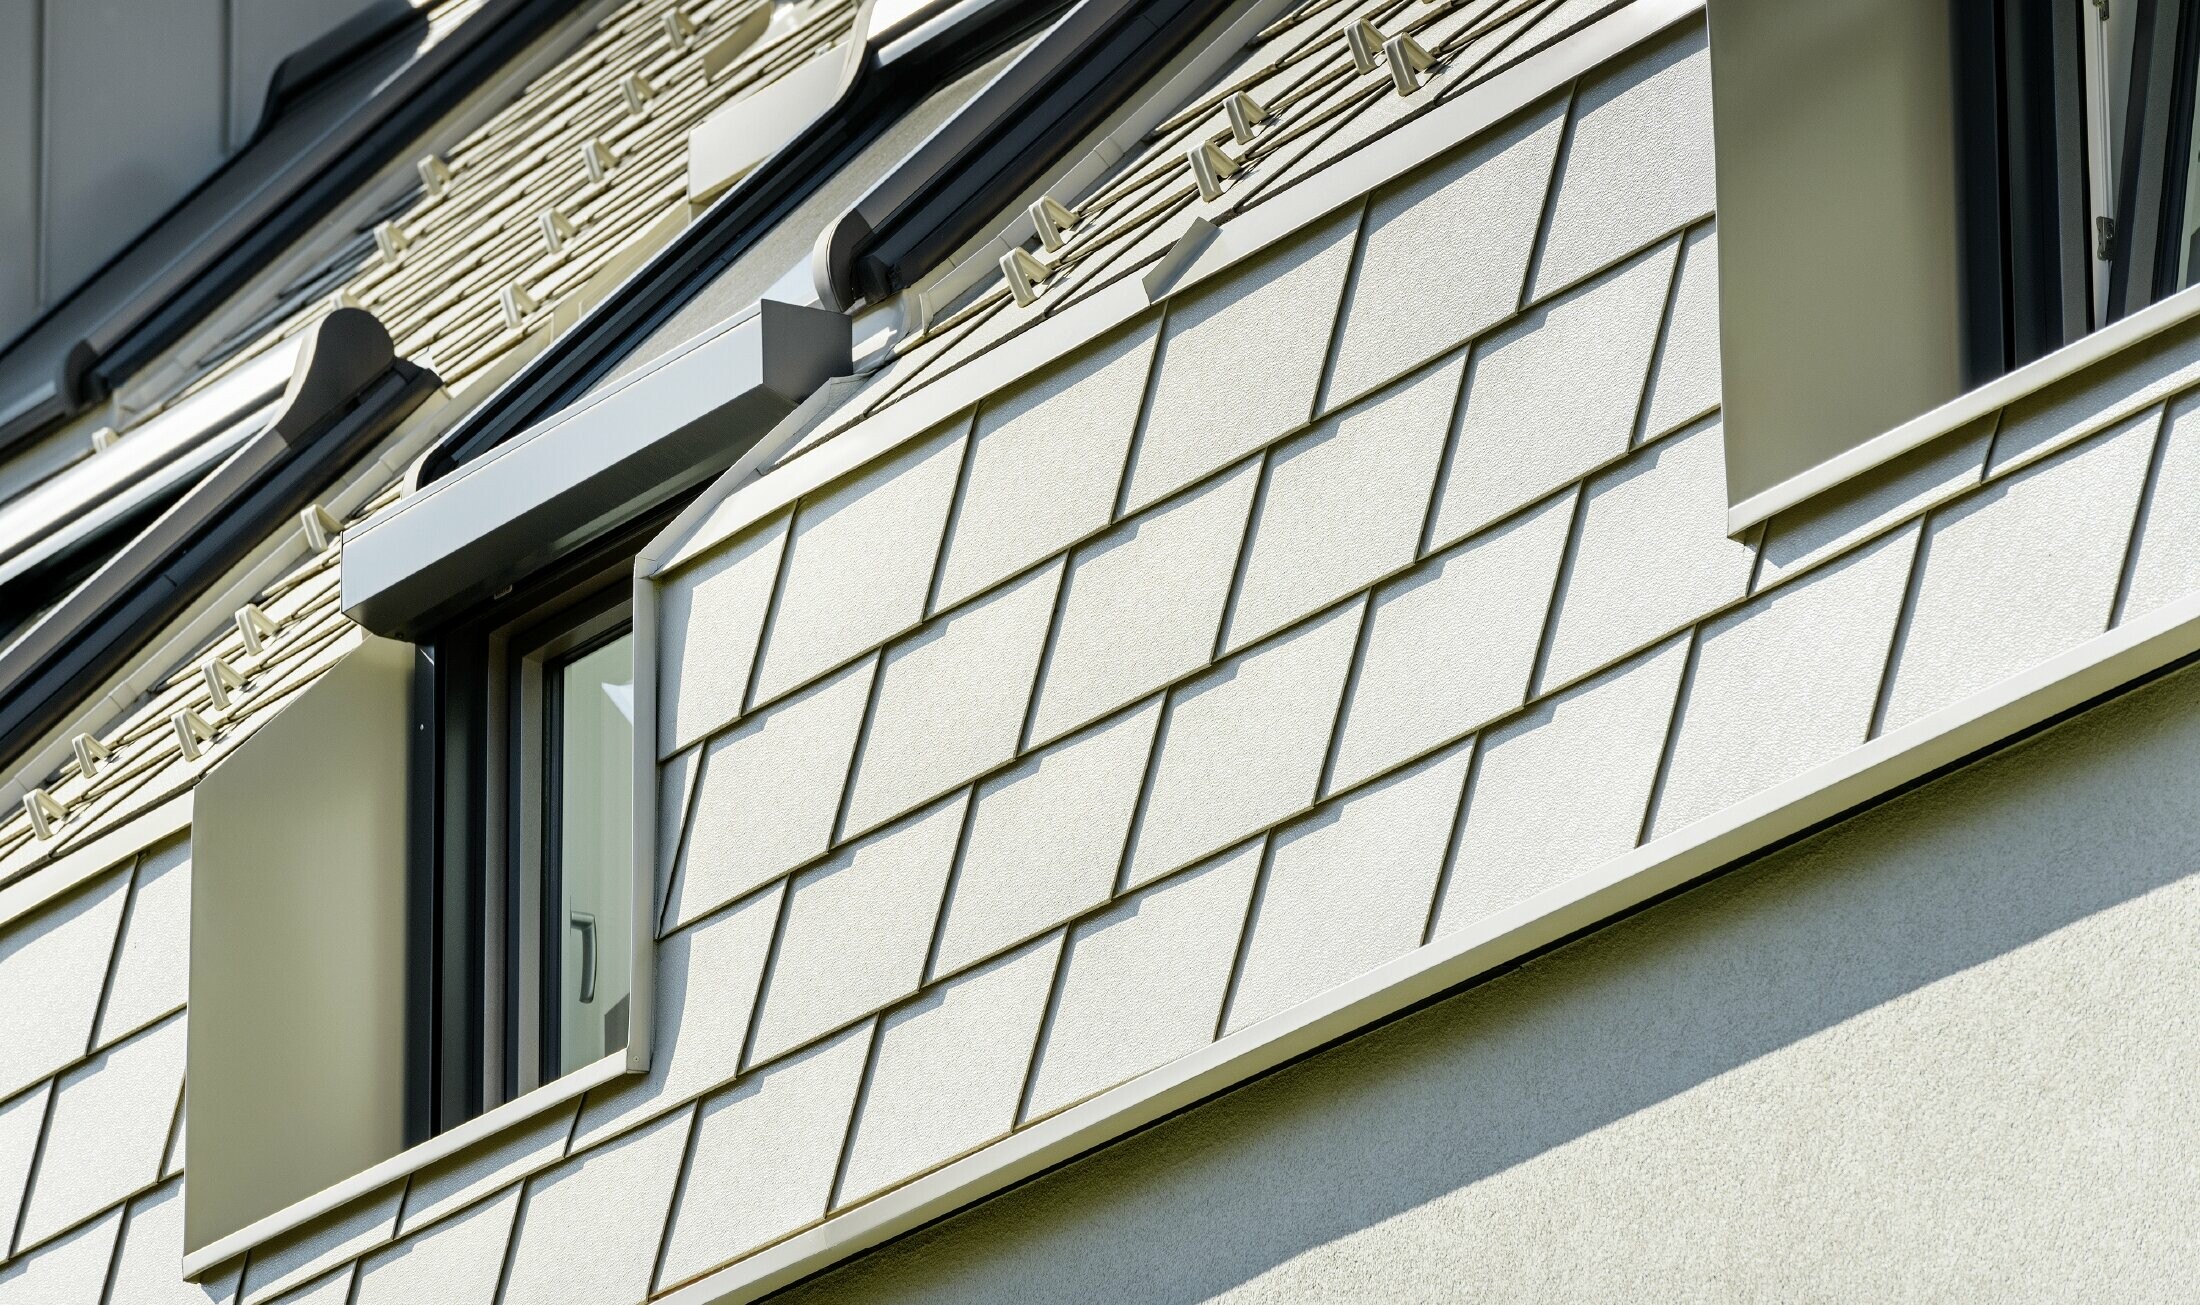 Nowe osiedle mieszkaniowe z dużymi powierzchniami dachowymi pokrytymi aluminium i wieloma oknami połaciowymi